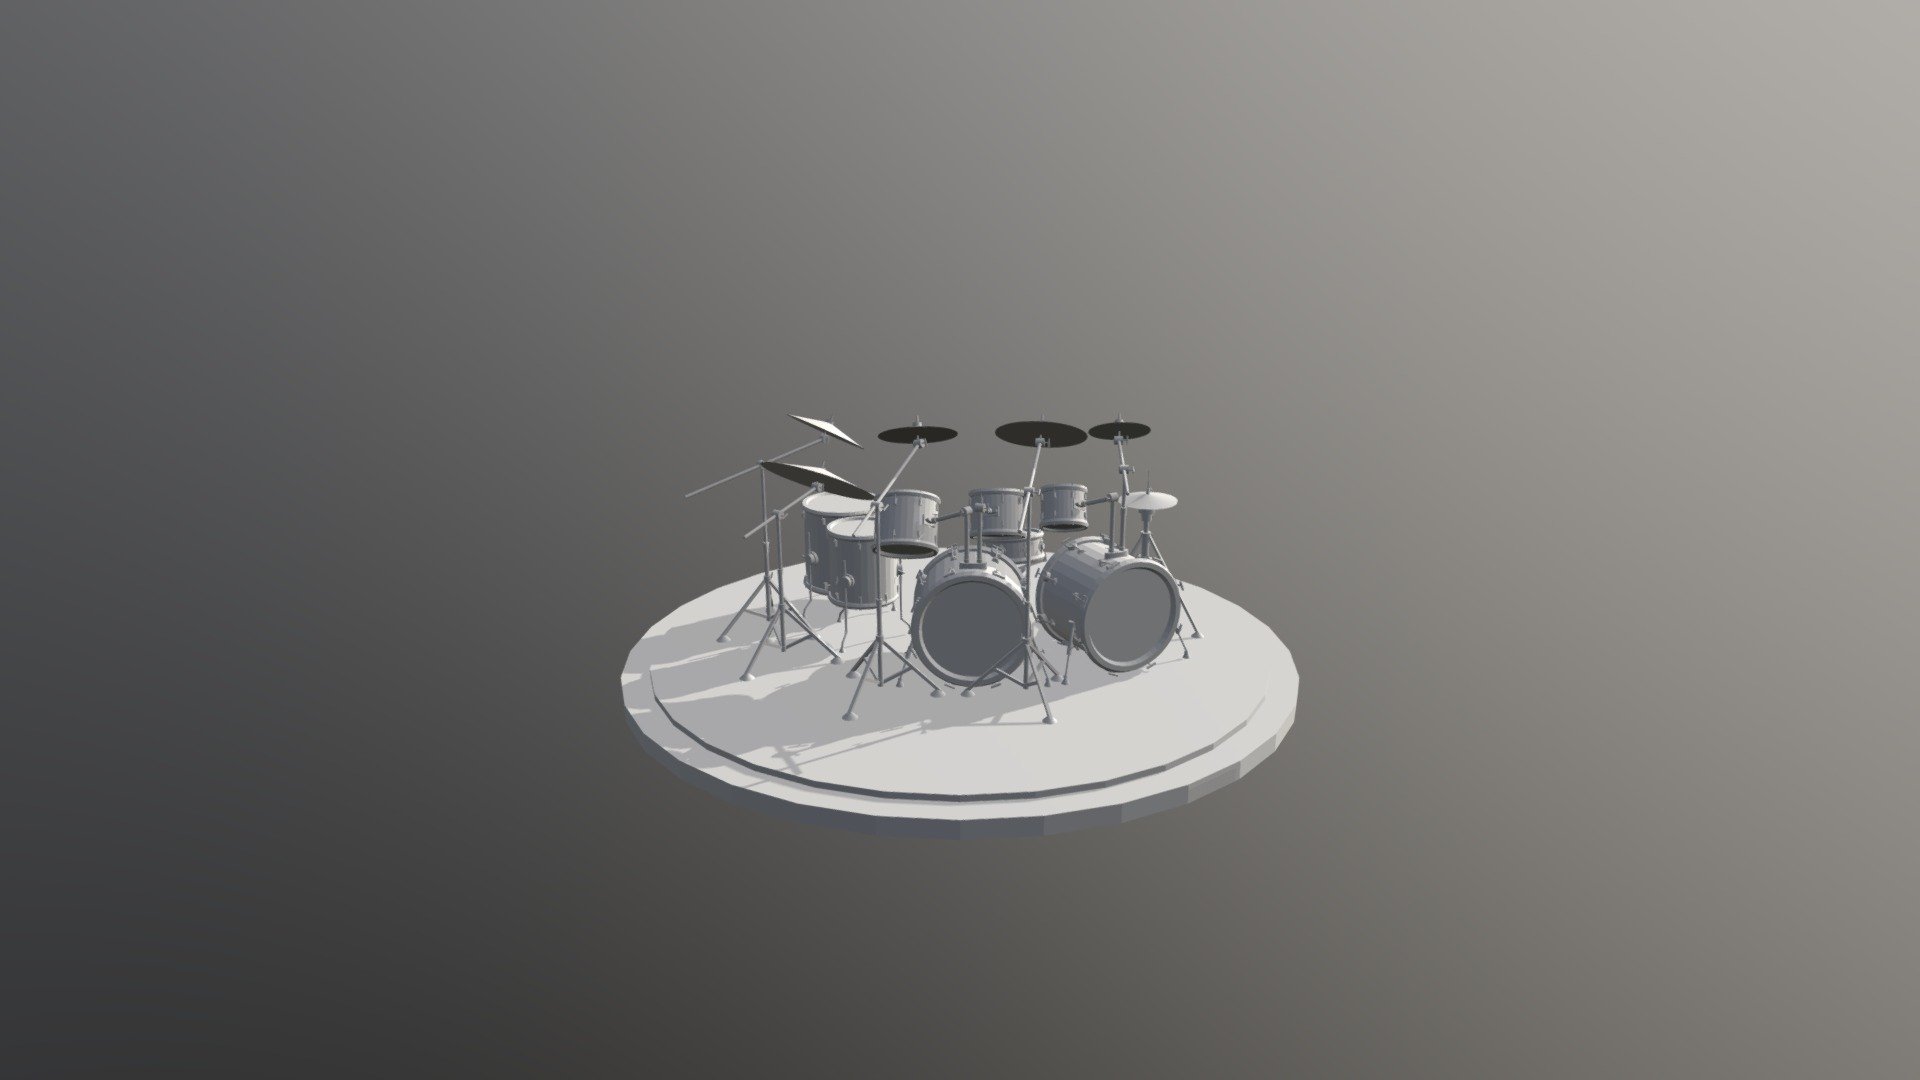 8-Piece Drum Kit (Primitives) - 3D model by stratocastus [16b8e8d ...